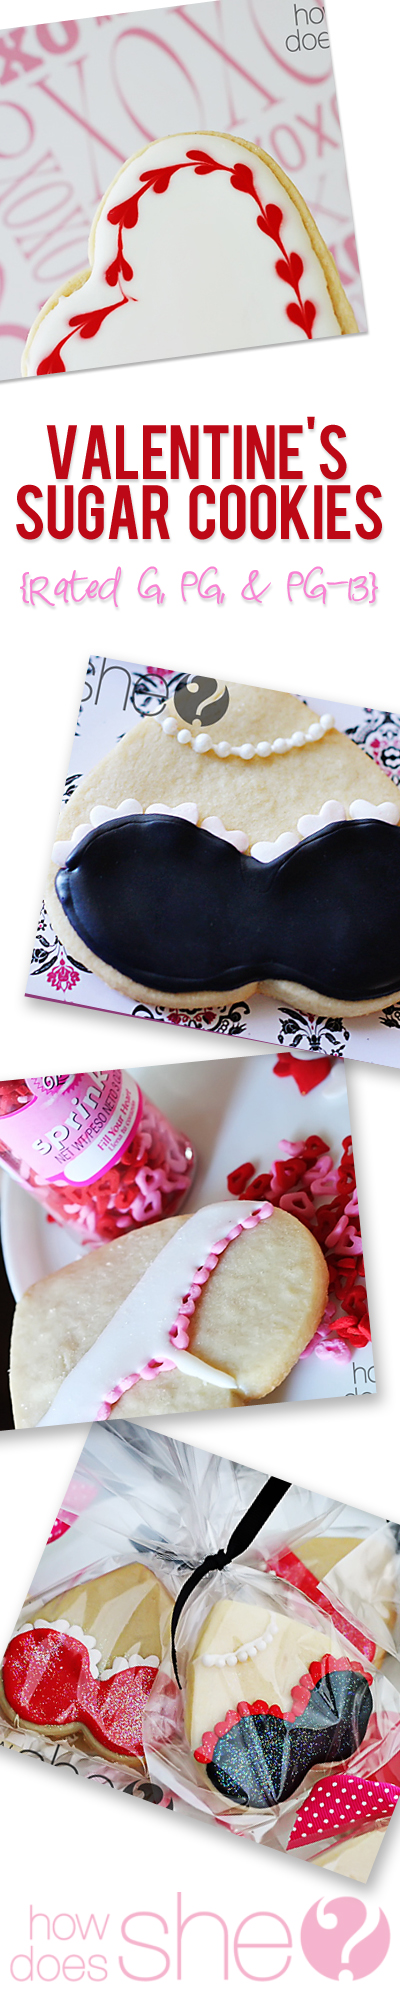 Valentines Sugar Cookies and lingerie cookies